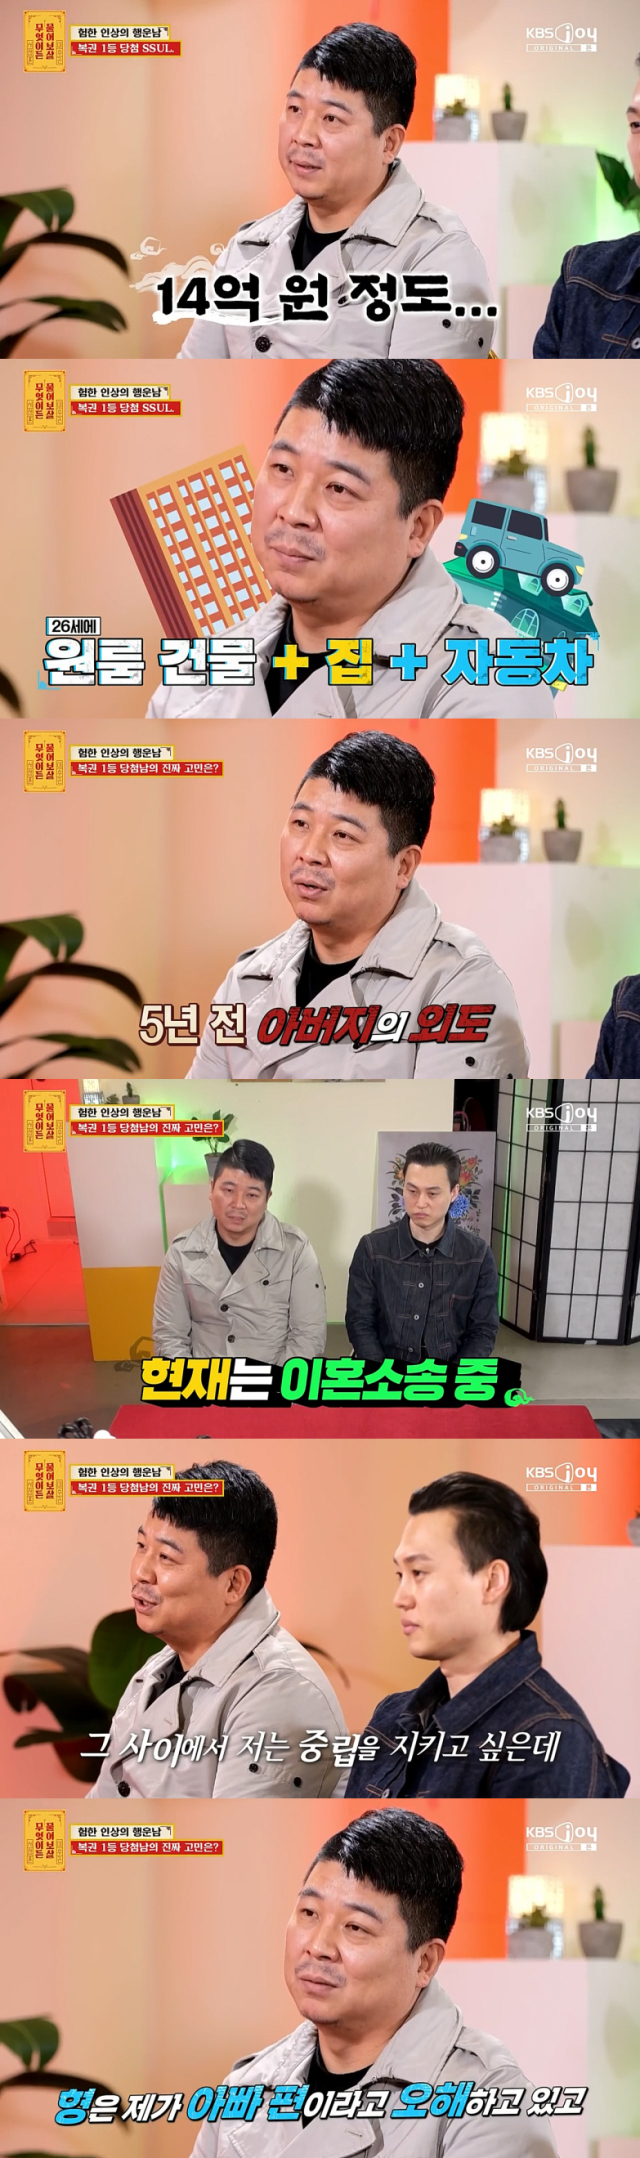 고민을 공개한 복권 1등 당첨남./케이블채널 KBS Joy 예능프로그램 '무엇이든 물어보살' 방송 캡처